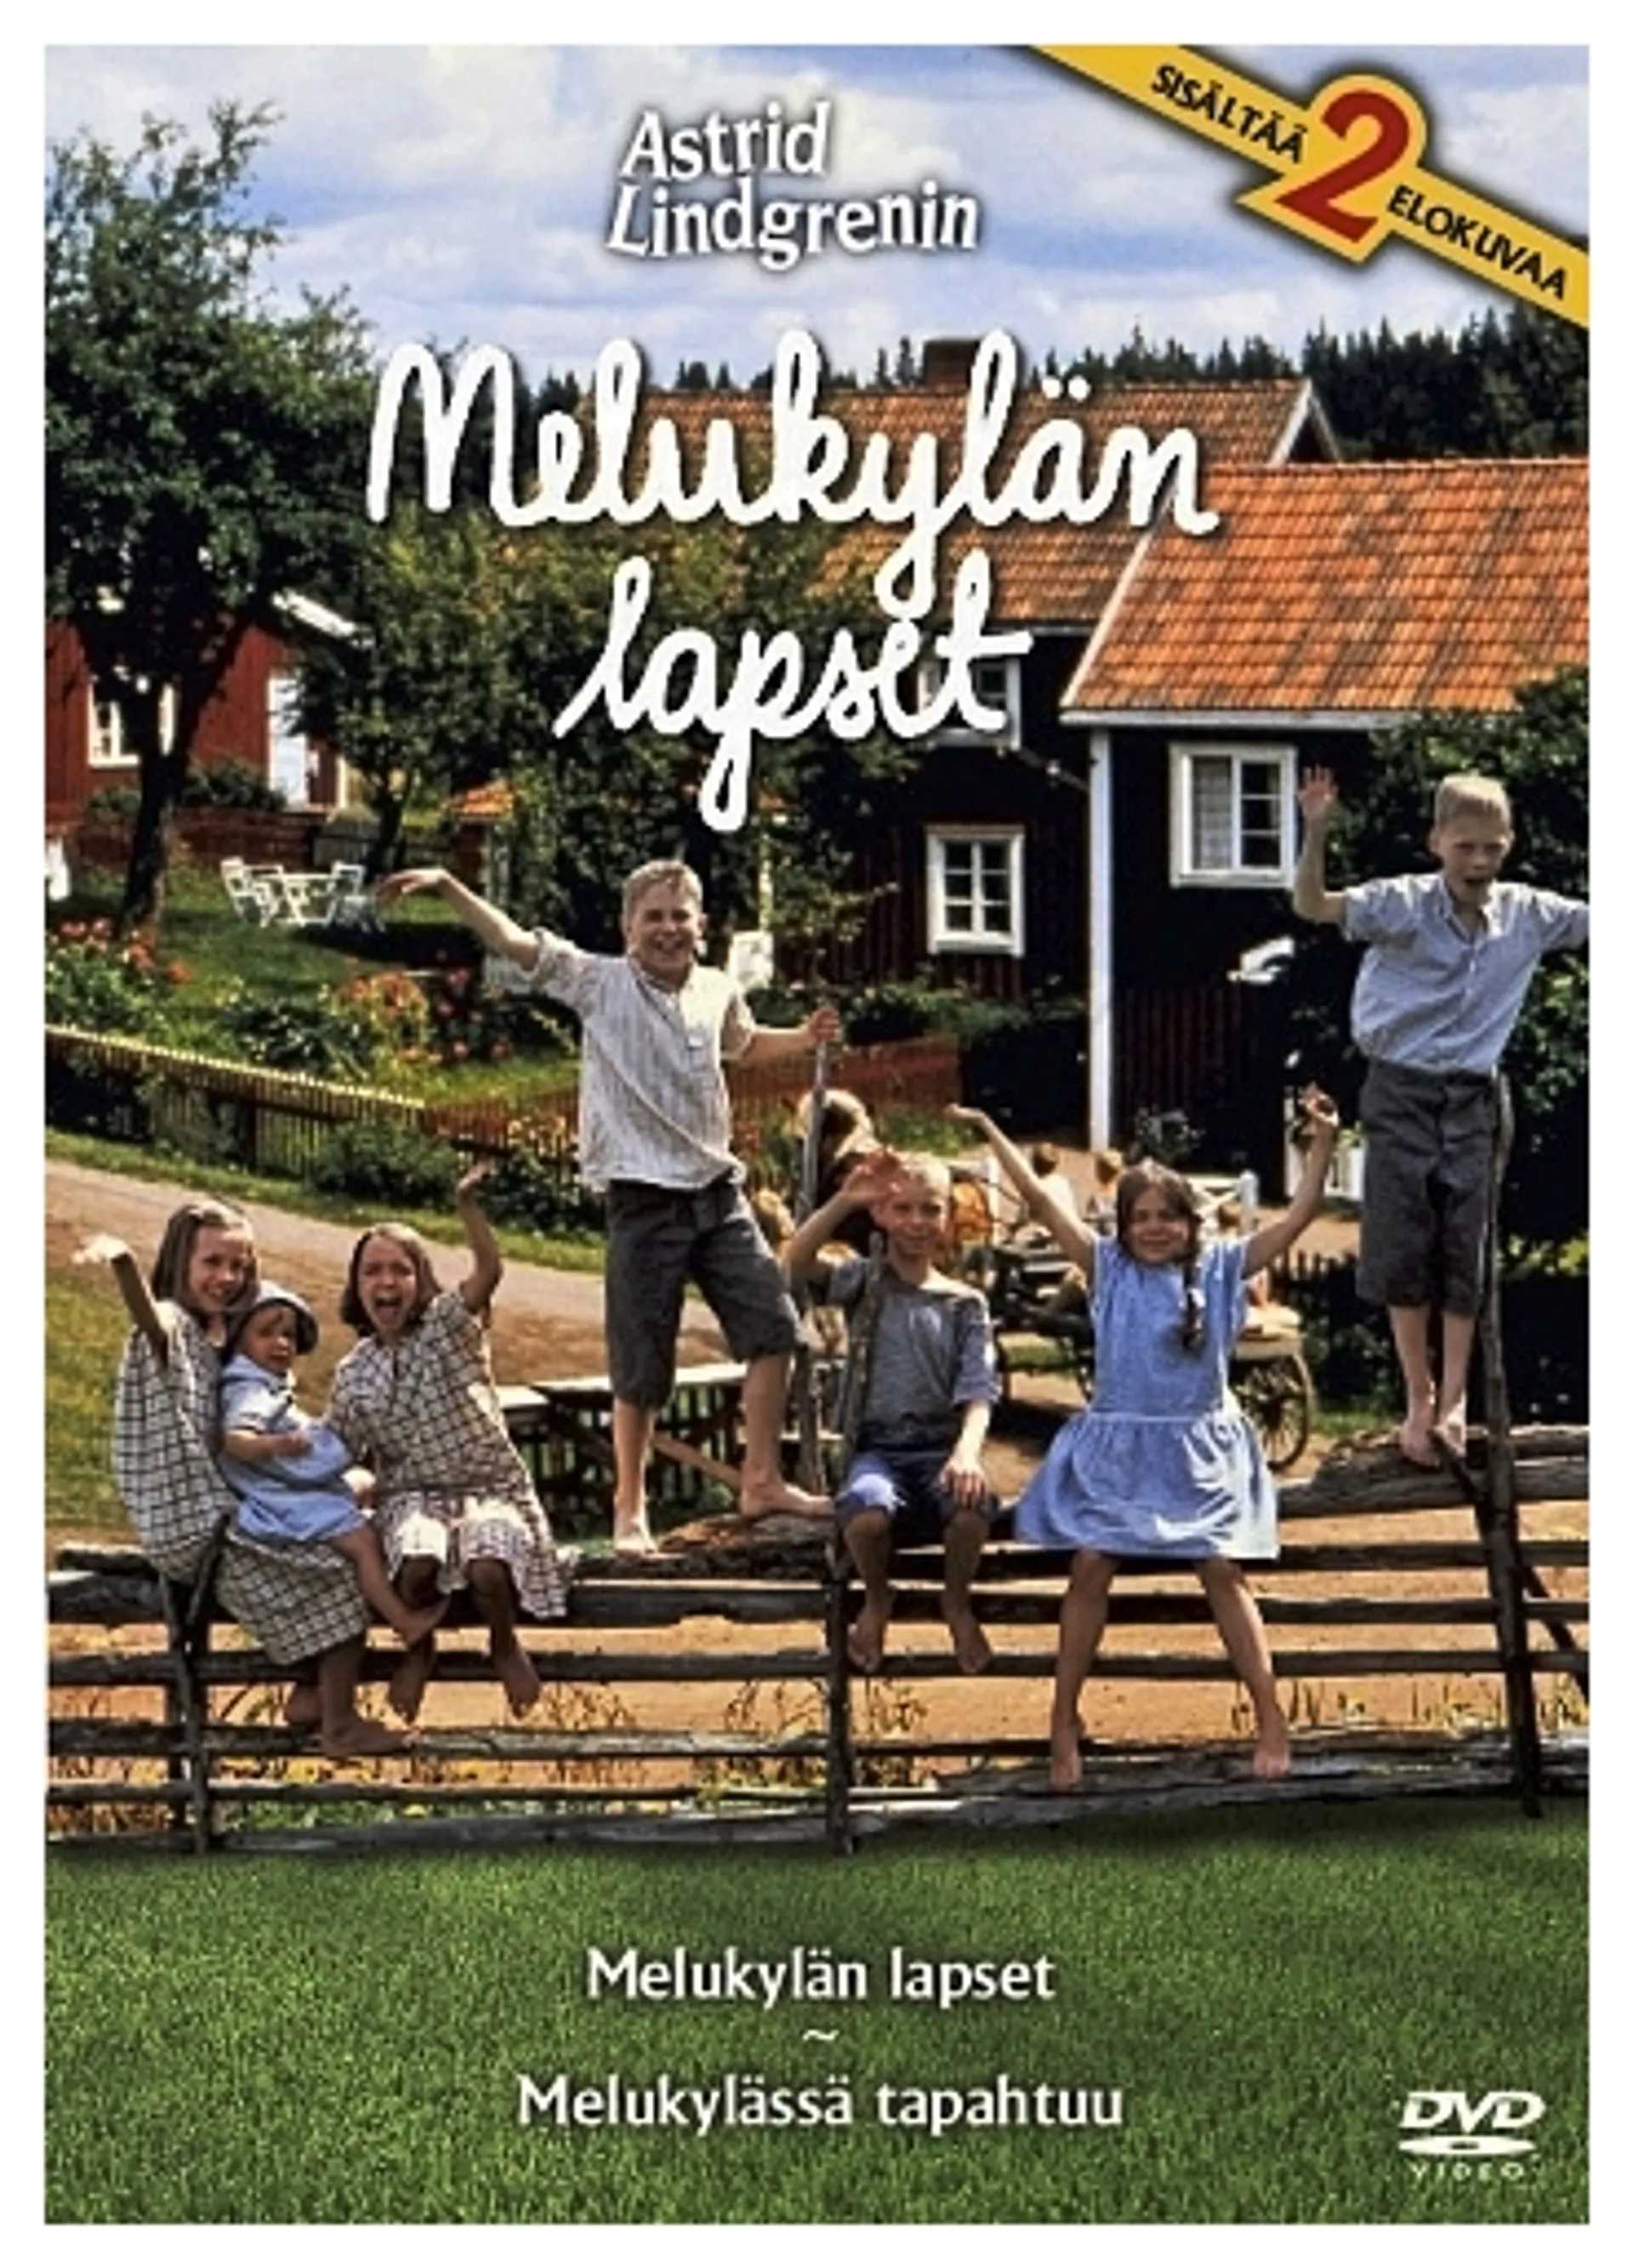 SF Film dvd Astrid Lindgren: Melukylän lapset & Melukylässä tapahtuu 2-disc